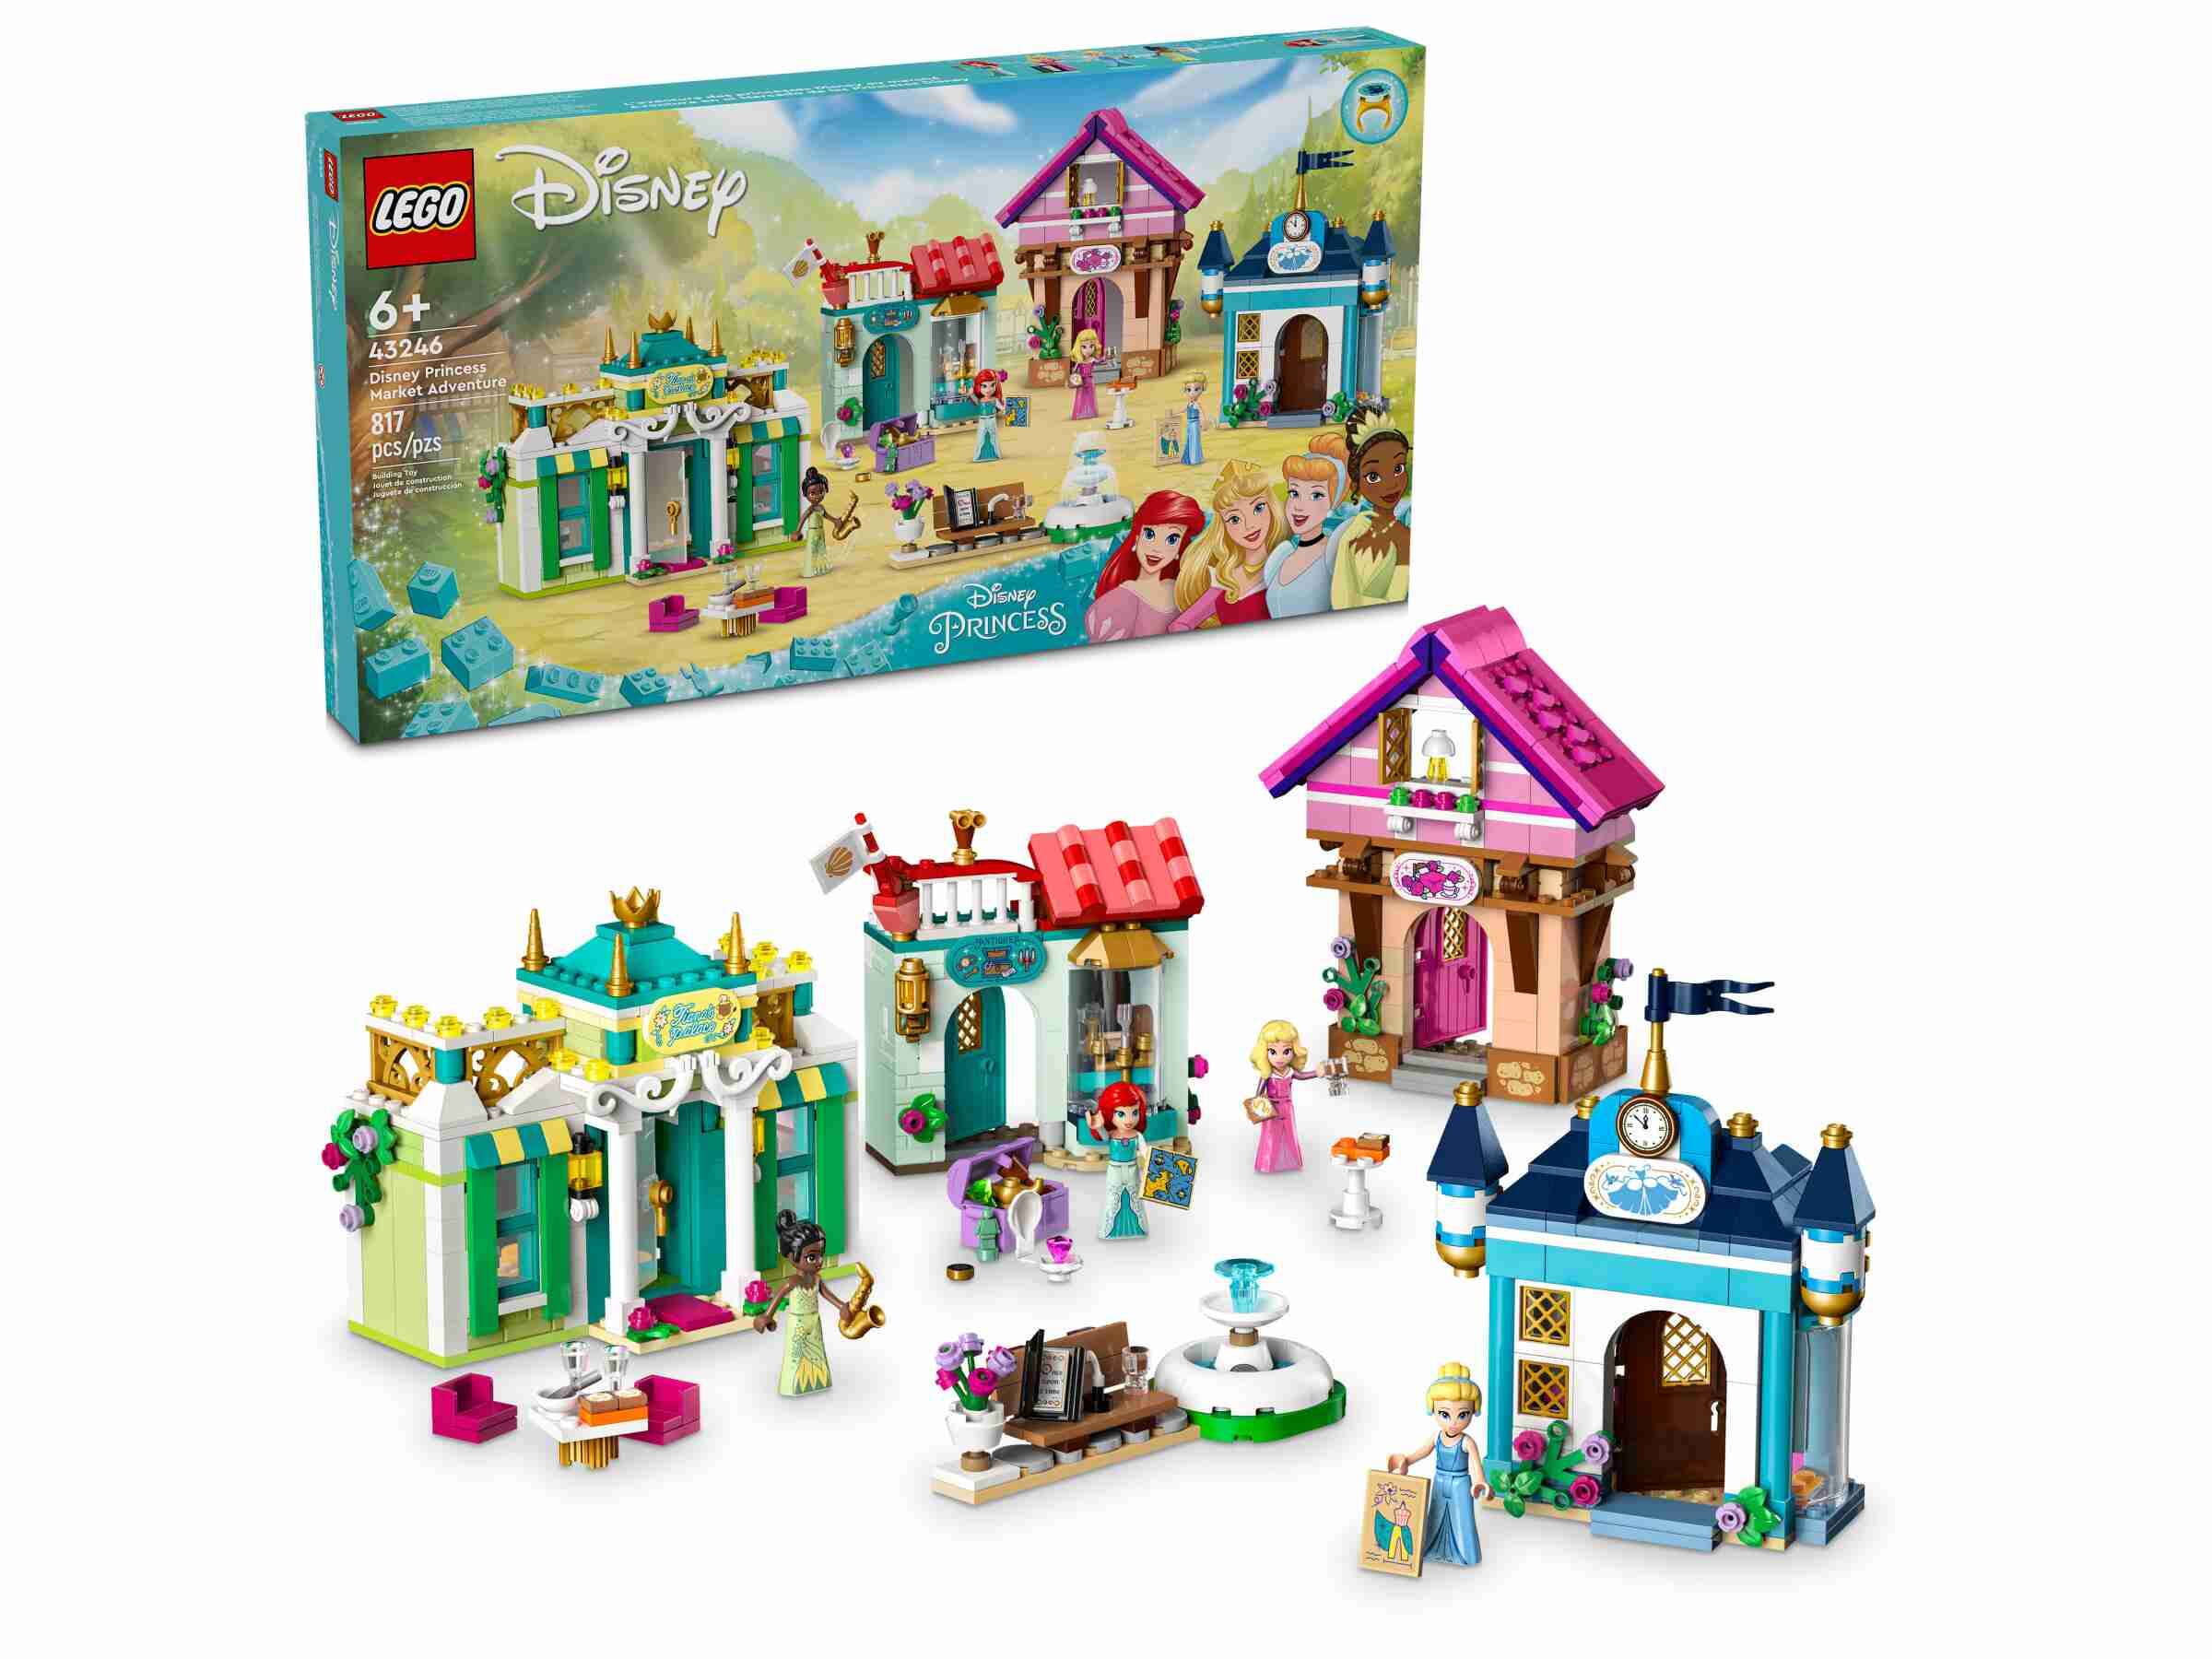 LEGO 43246 Disney Princess Abenteuermarkt, 4 Gebäude, 4 Prinzessinen